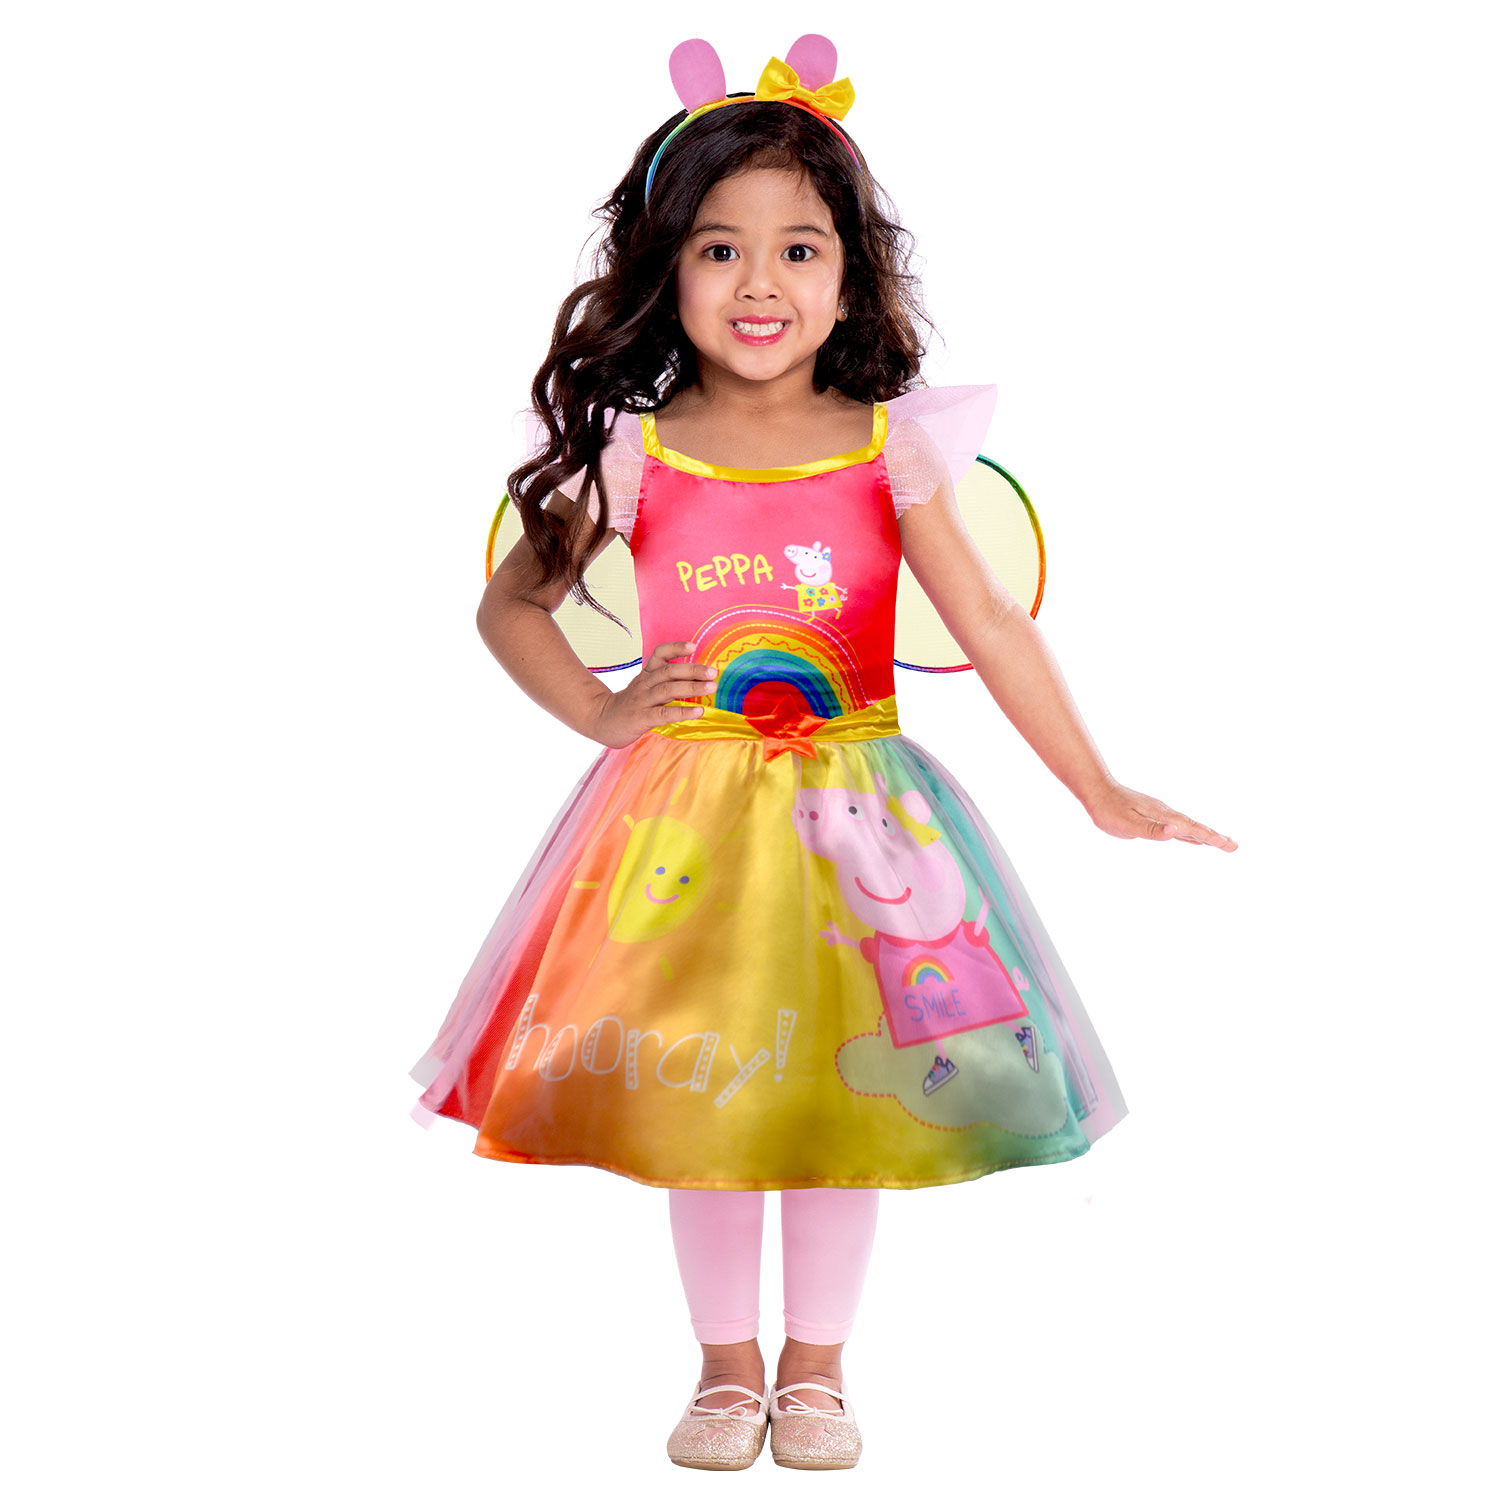 Peppa gris rainbow kjole 3-4 år